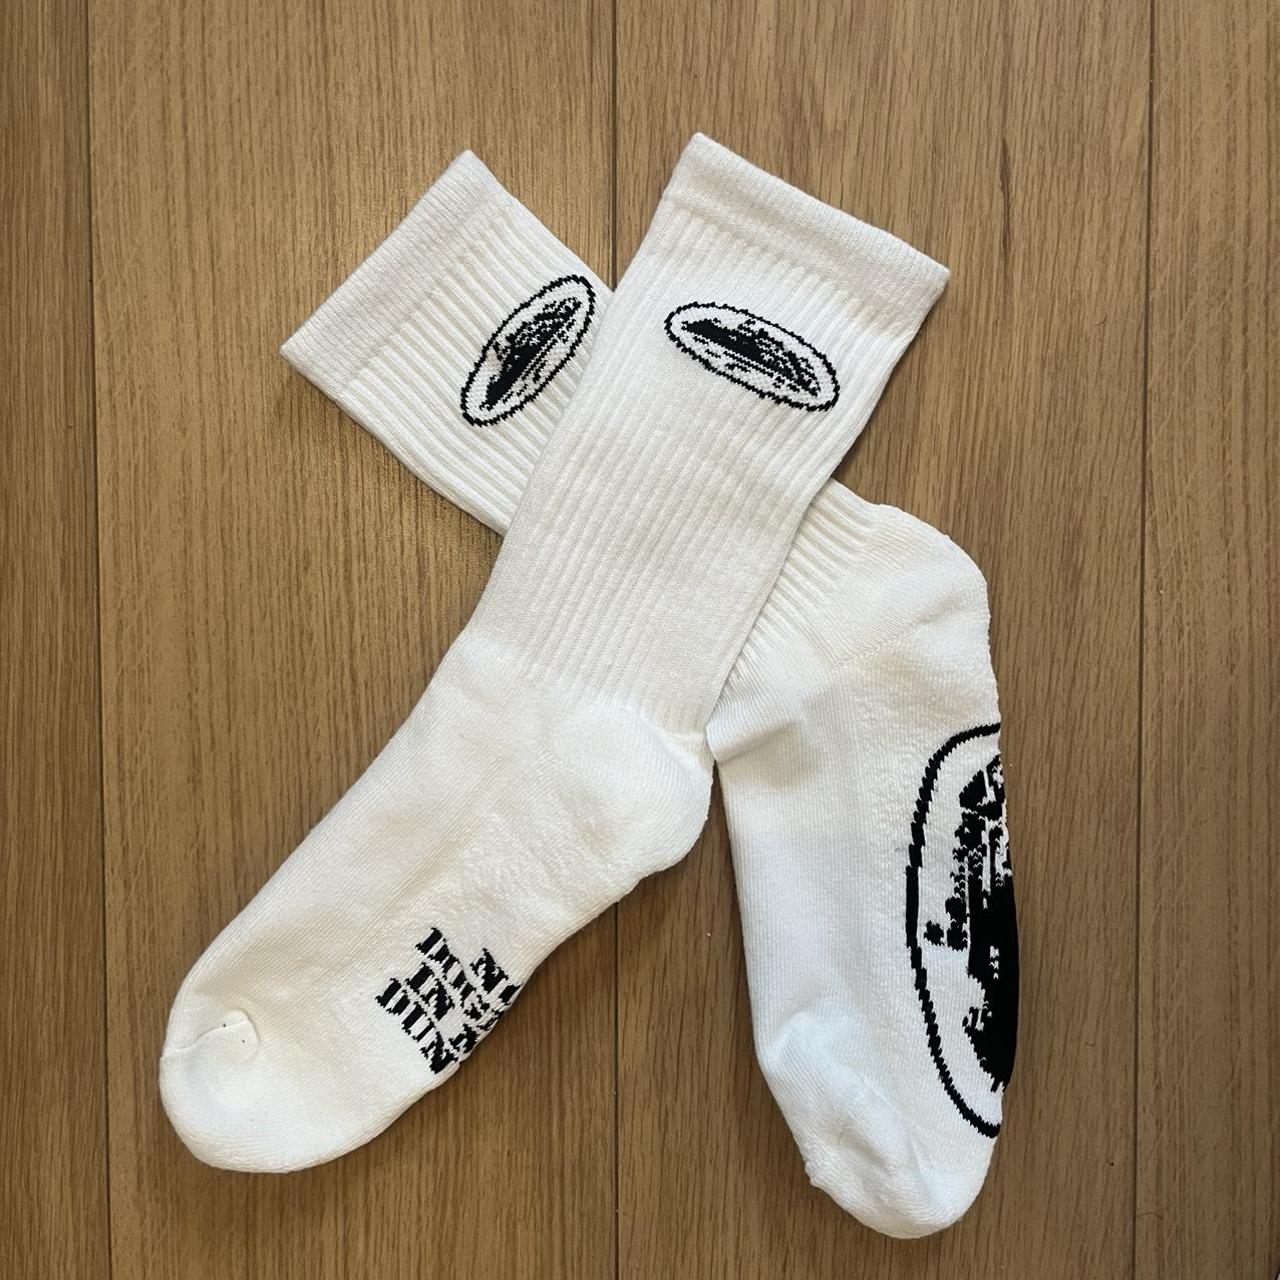 Corteiz socks 1 pair £20 5 pair £80 - Depop